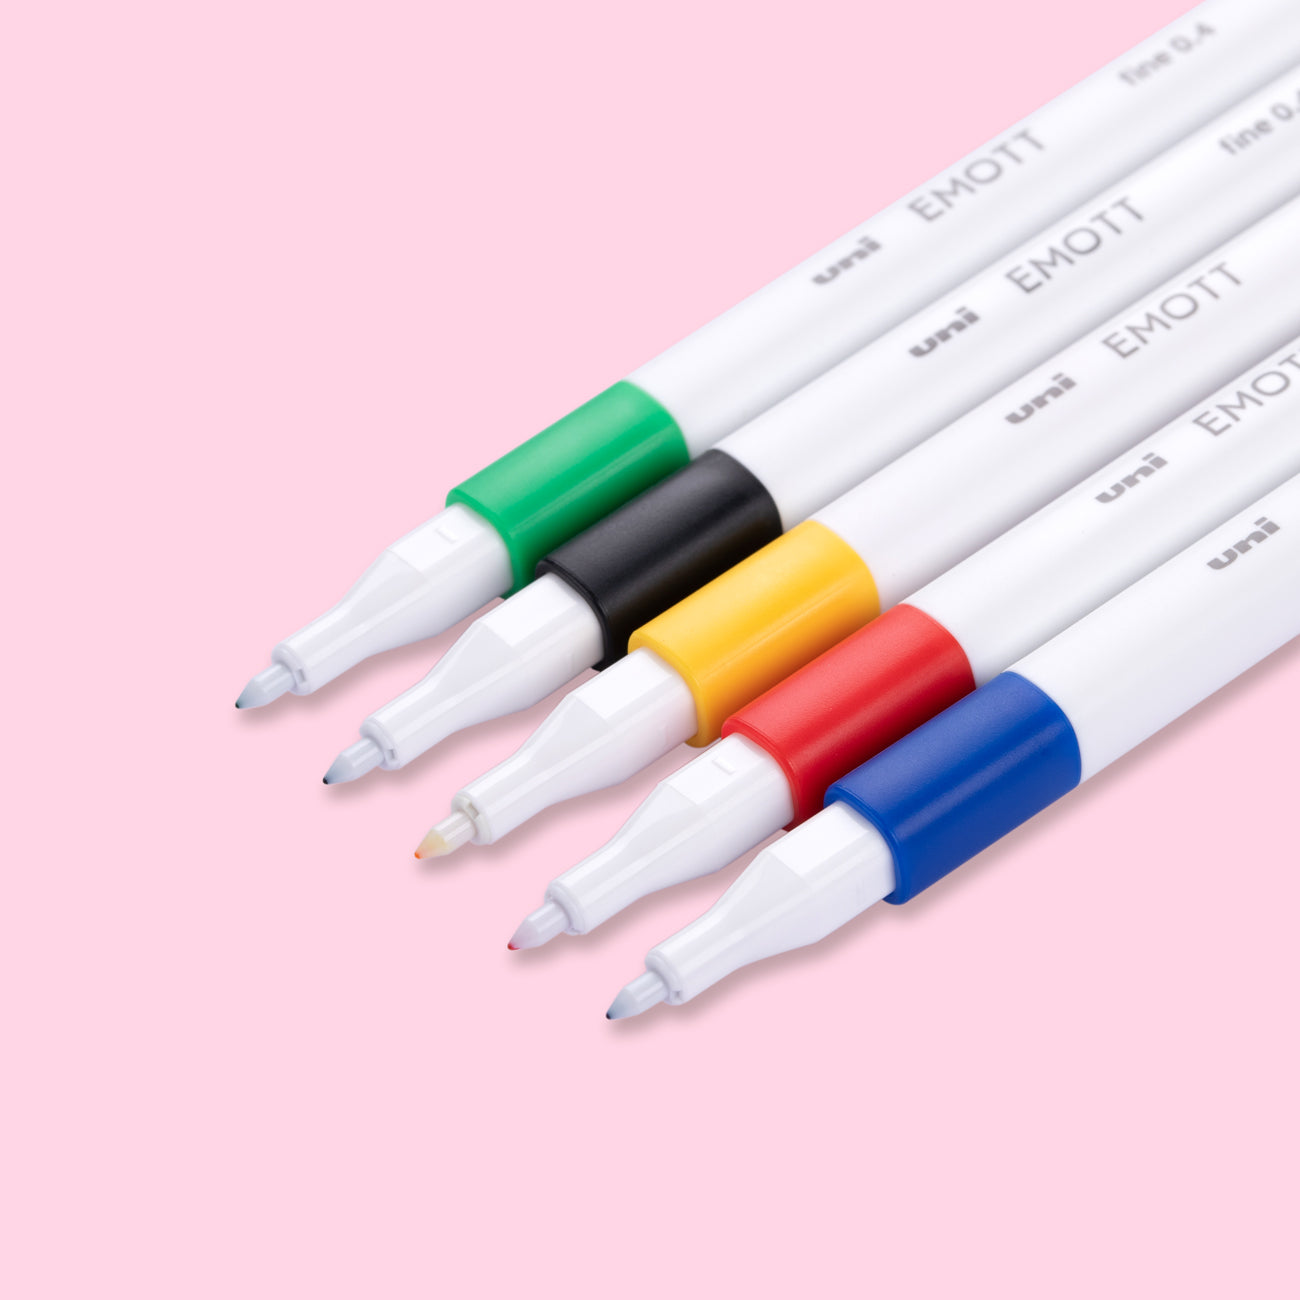 Uni Emott Ever Fine Marking Sign Pen - 0.4 mm - 5 Color Set - No.1 Vivid Color